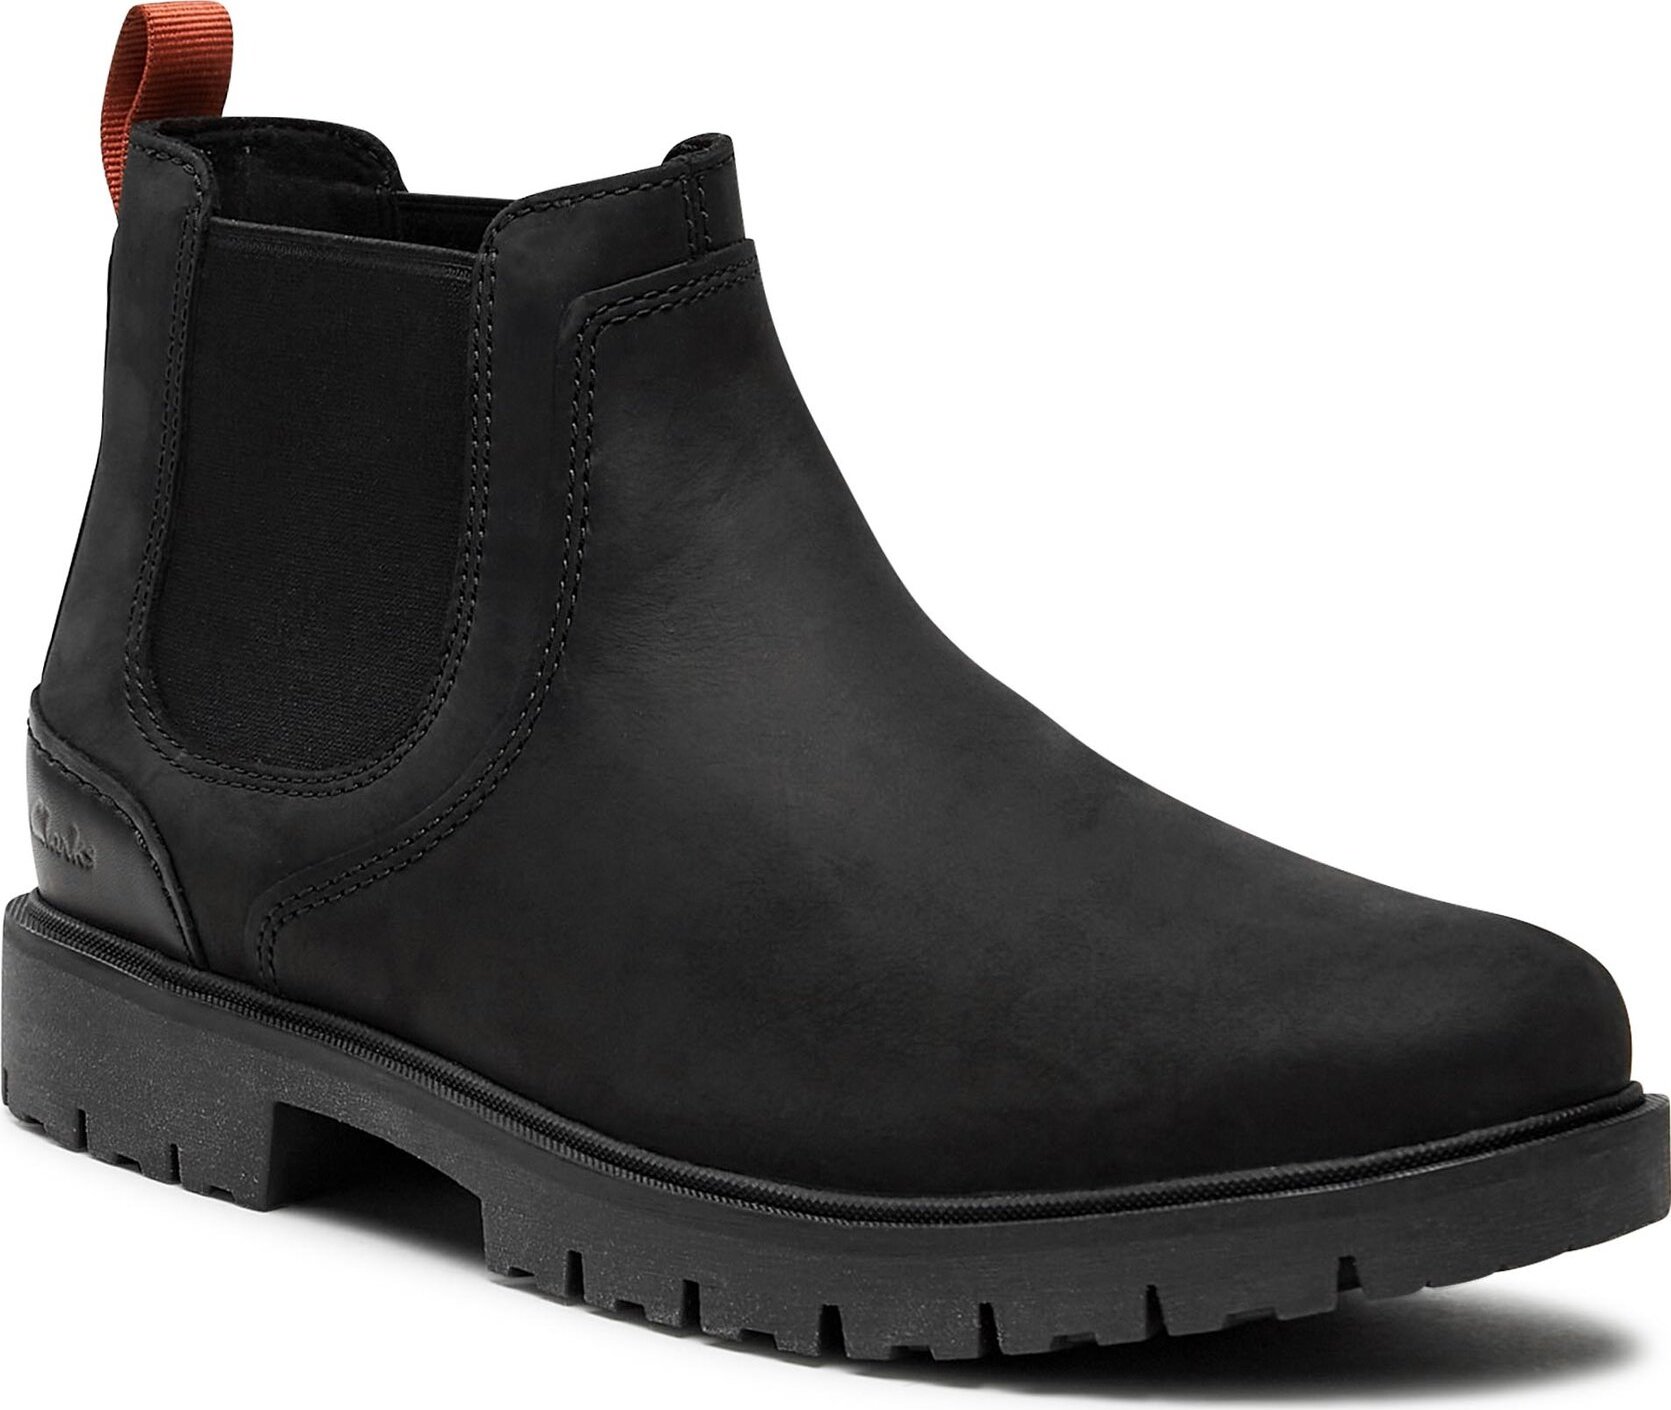 Kotníková obuv s elastickým prvkem Clarks Rossdale Top 261734567 Black Leather